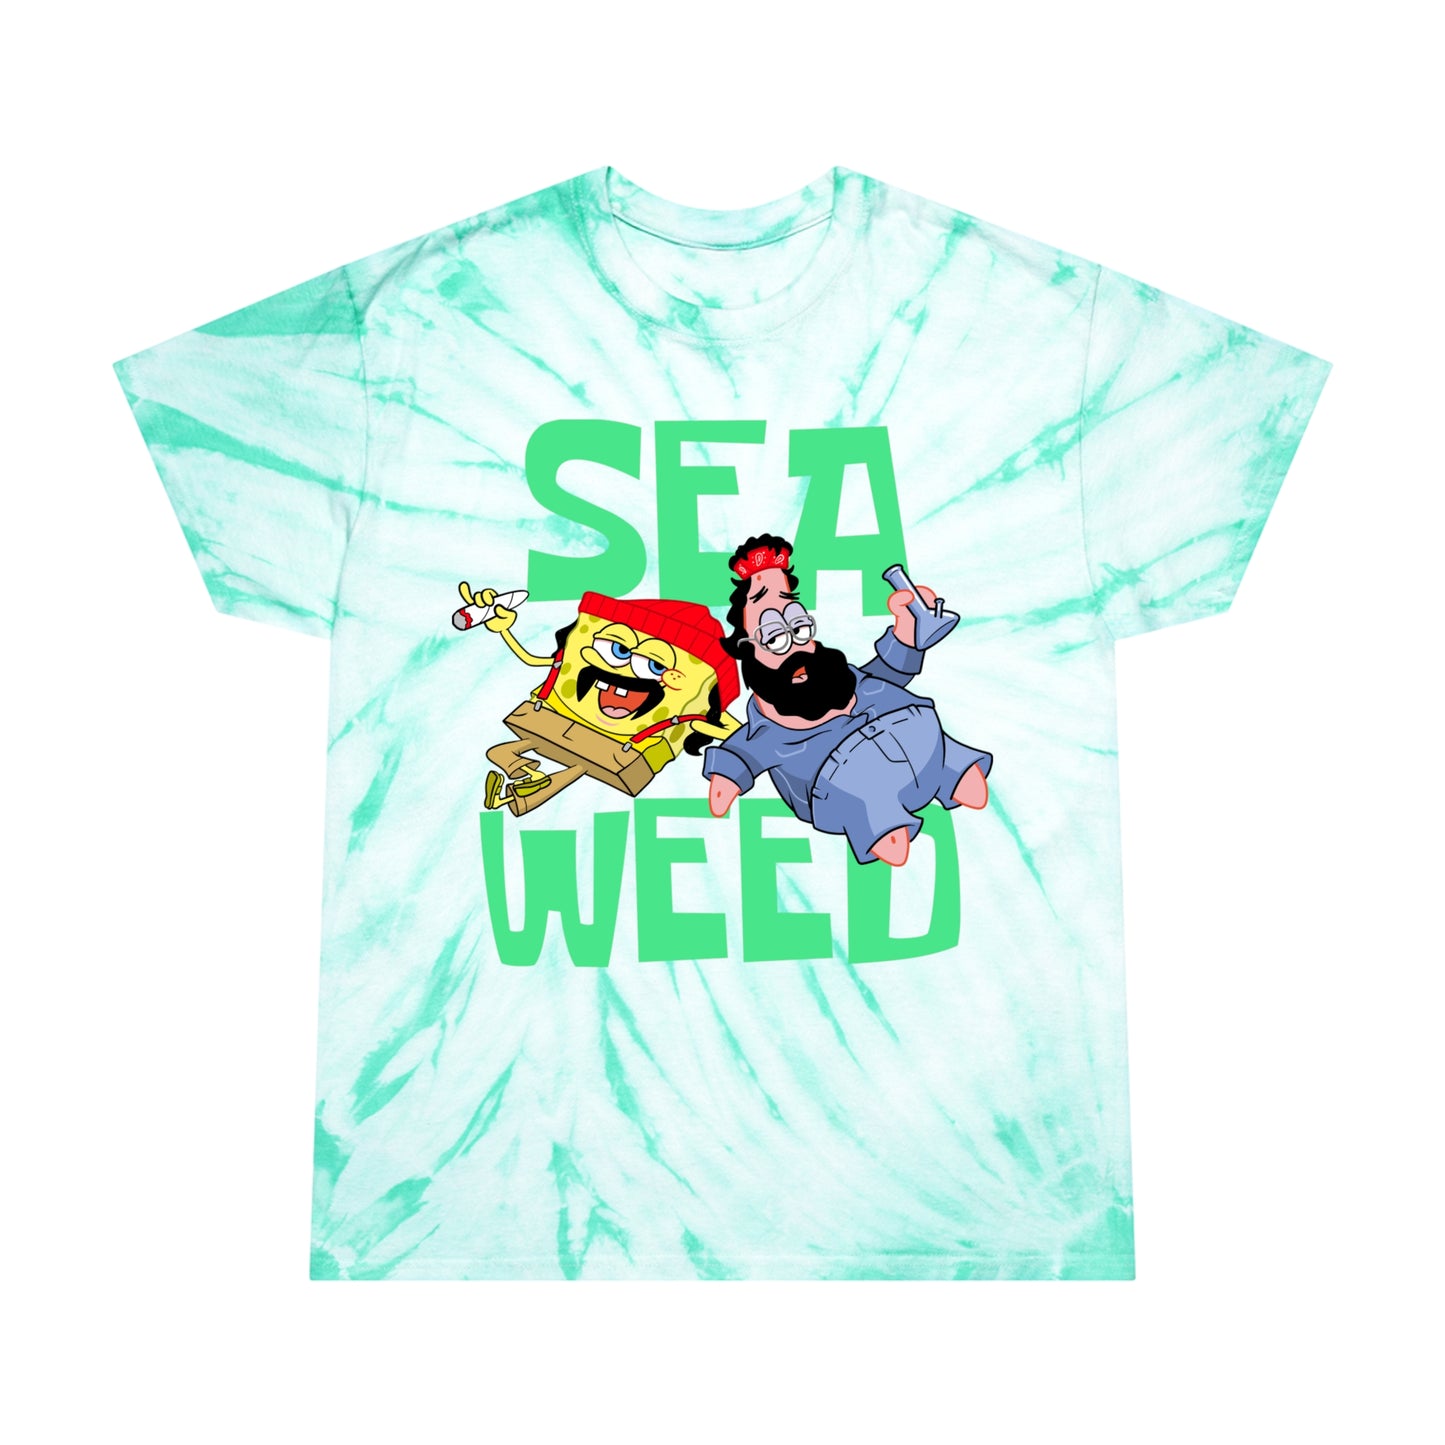 Sea Weed tie-dye t-shirt